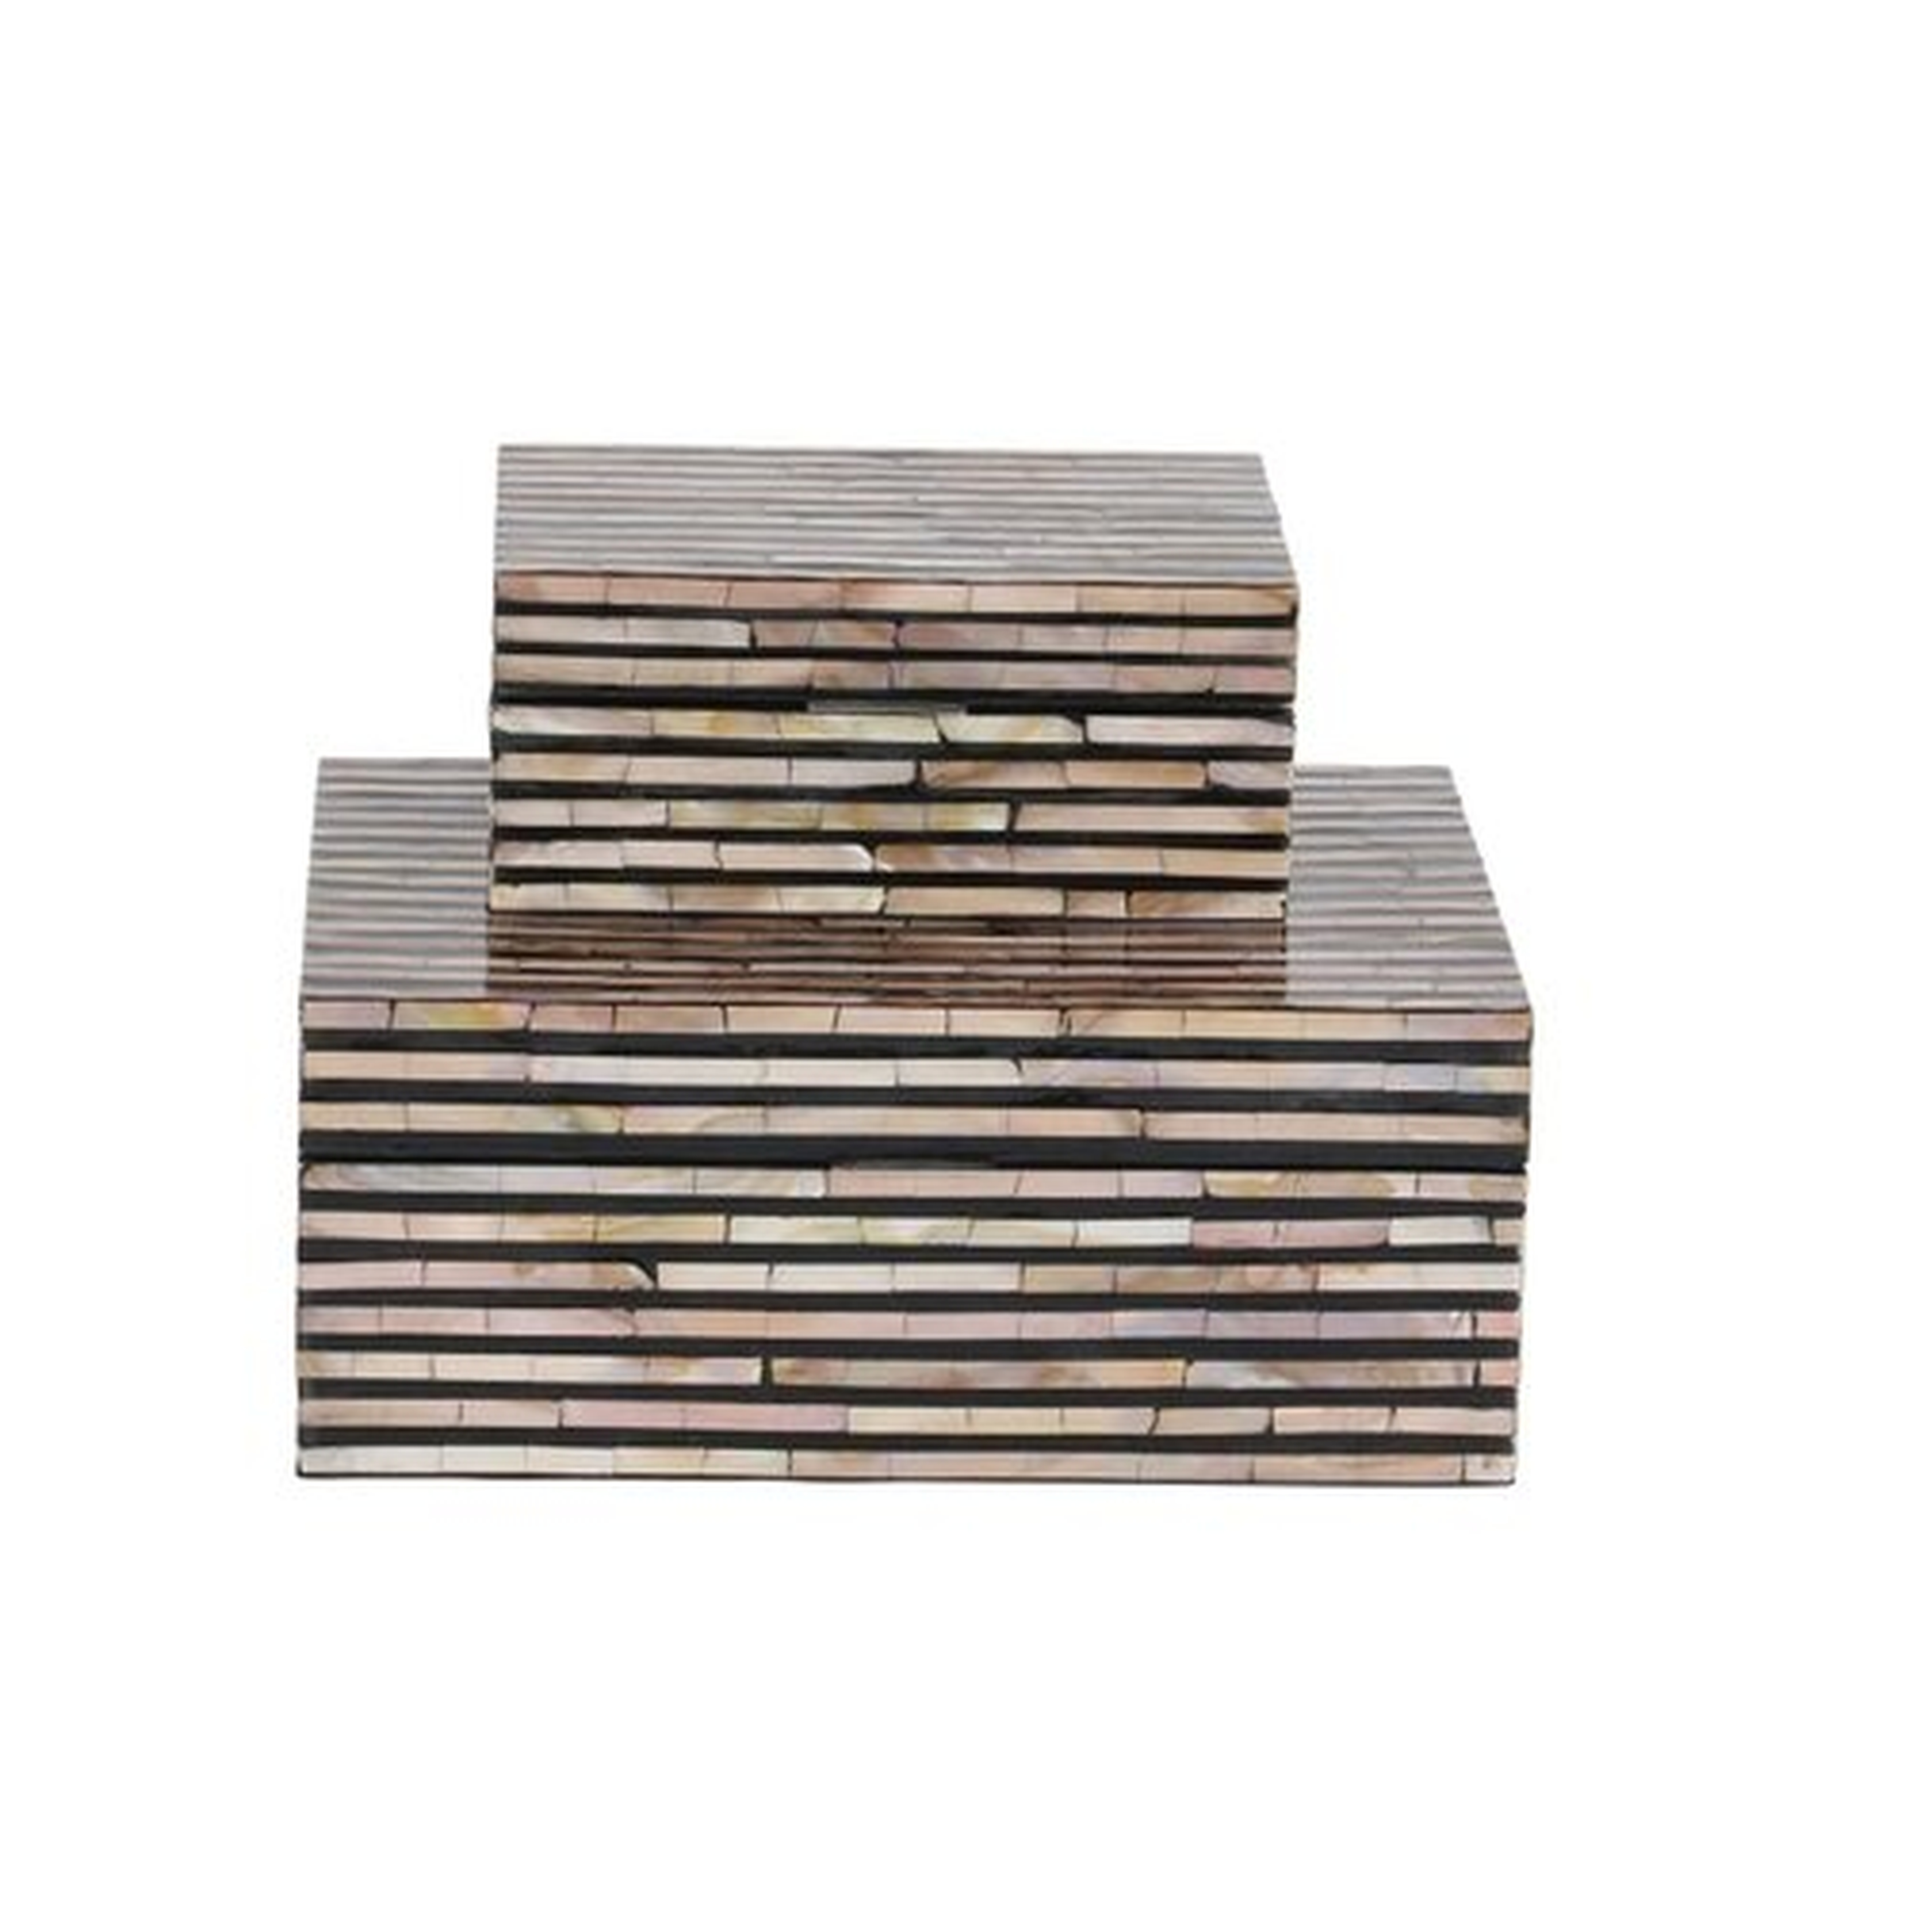 Wood Mop 2 Piece Decorative Box Set - Wayfair